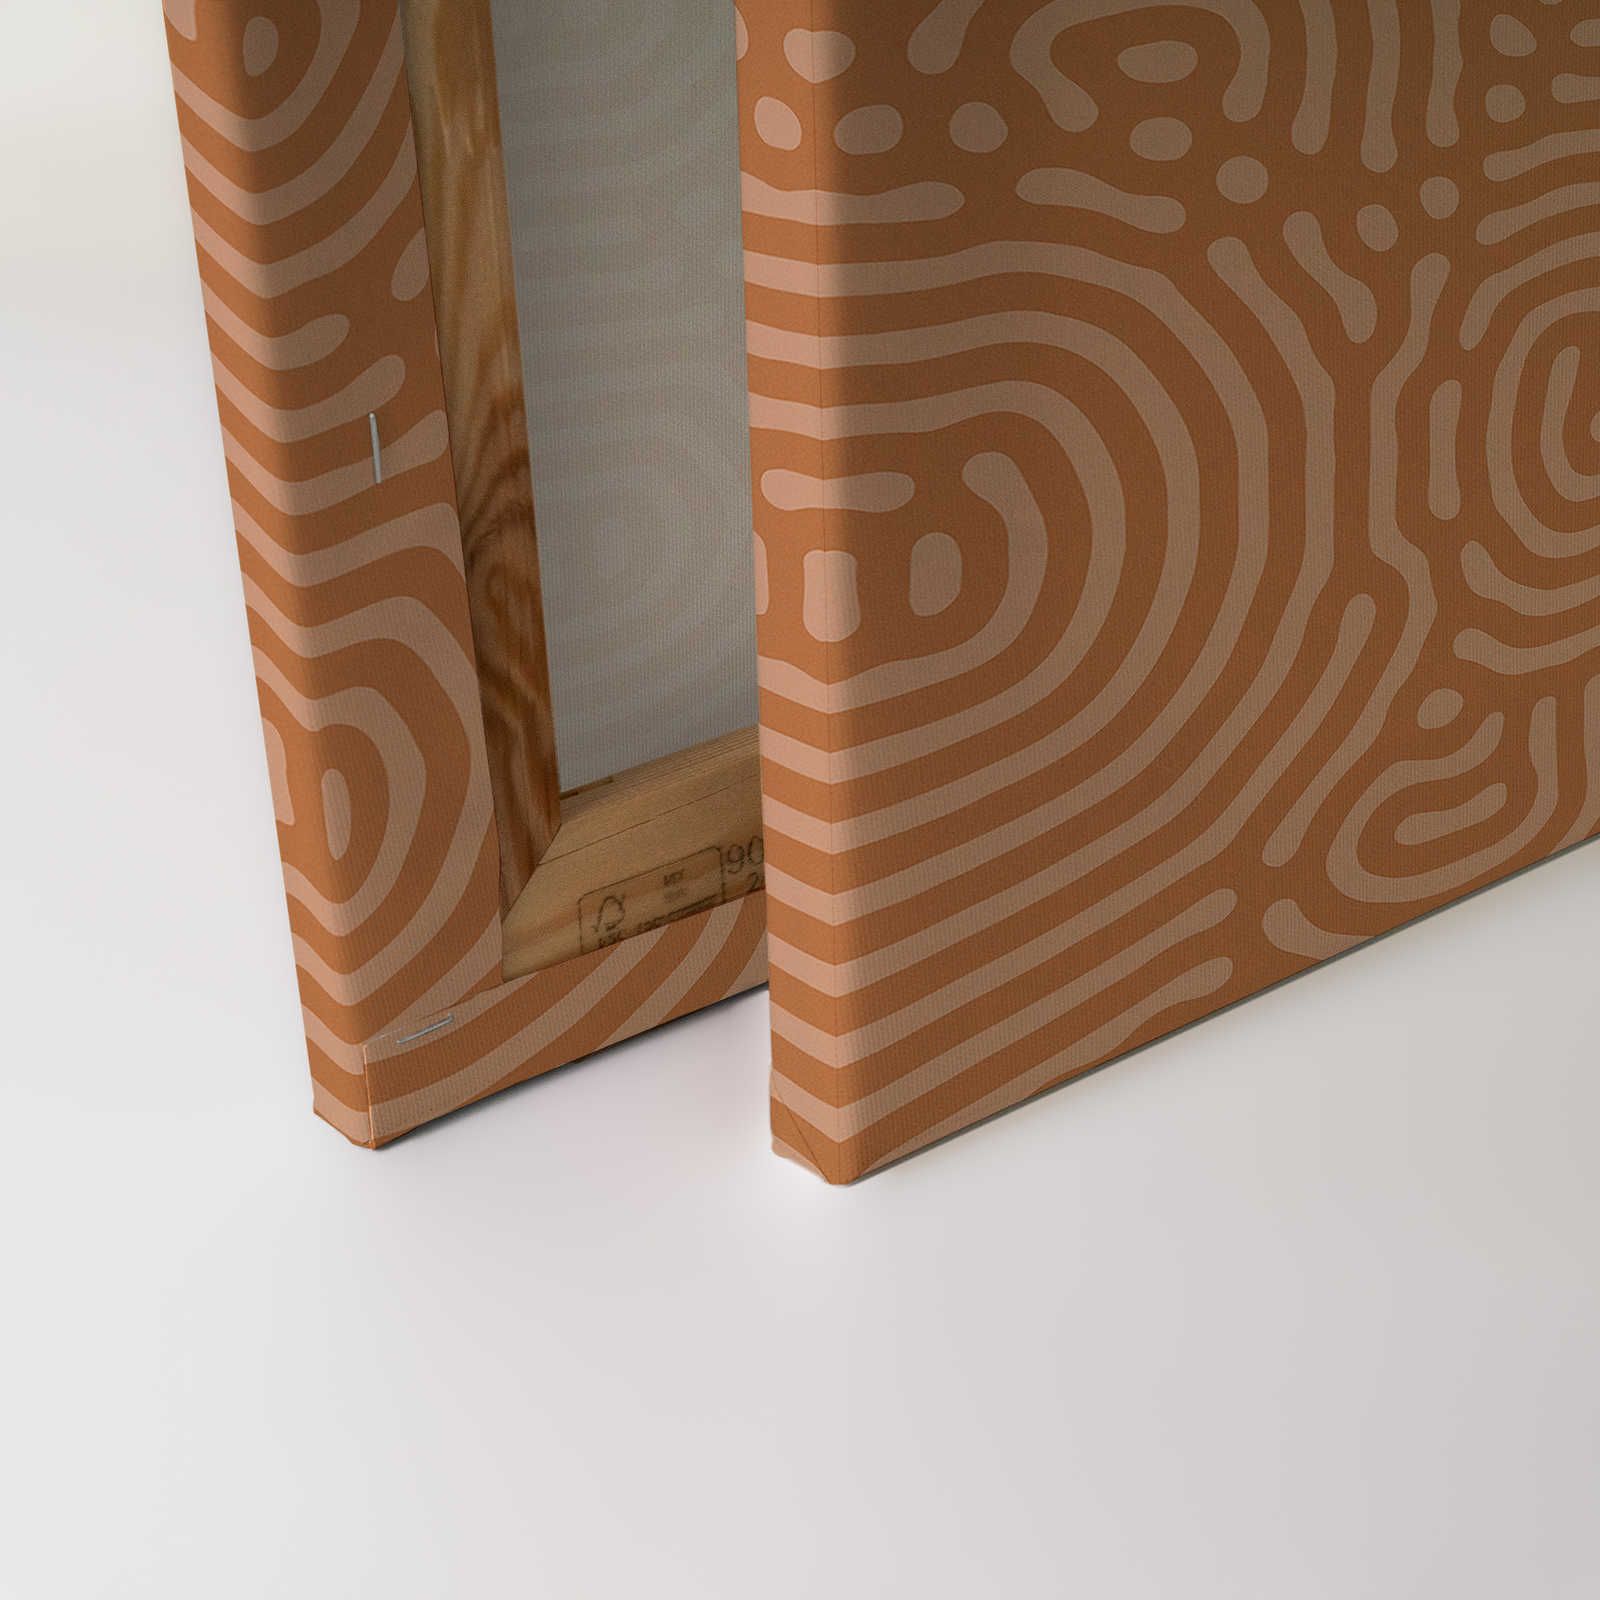             Sahel 2 - Toile orange motif labyrinthe terre cuite - 0,90 m x 0,60 m
        